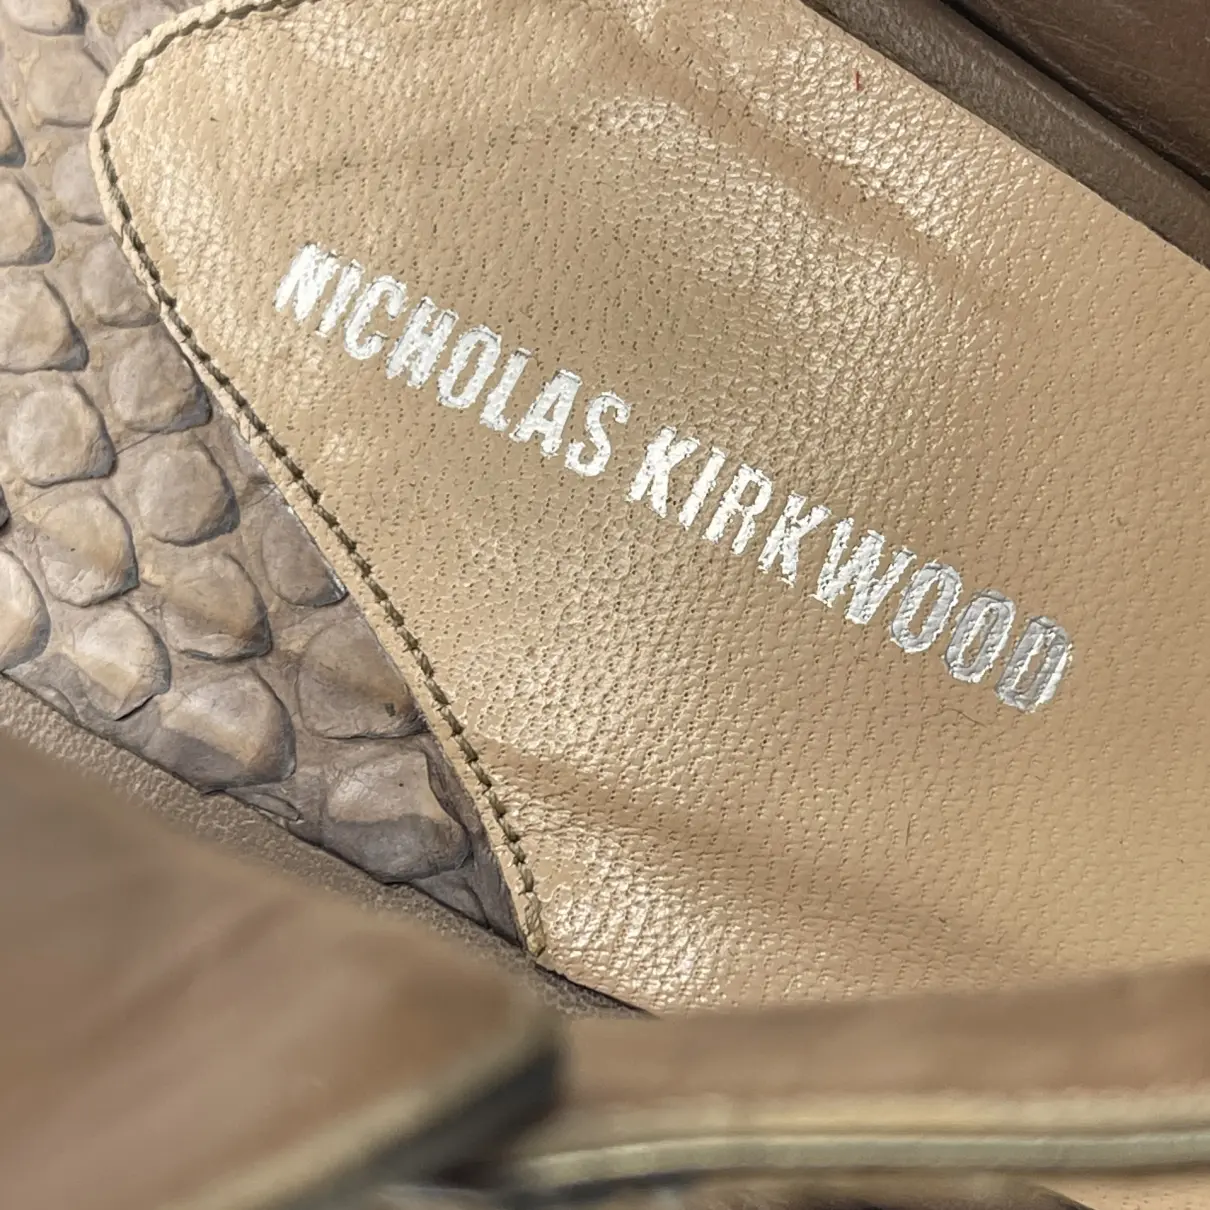 Leather heels Nicholas Kirkwood